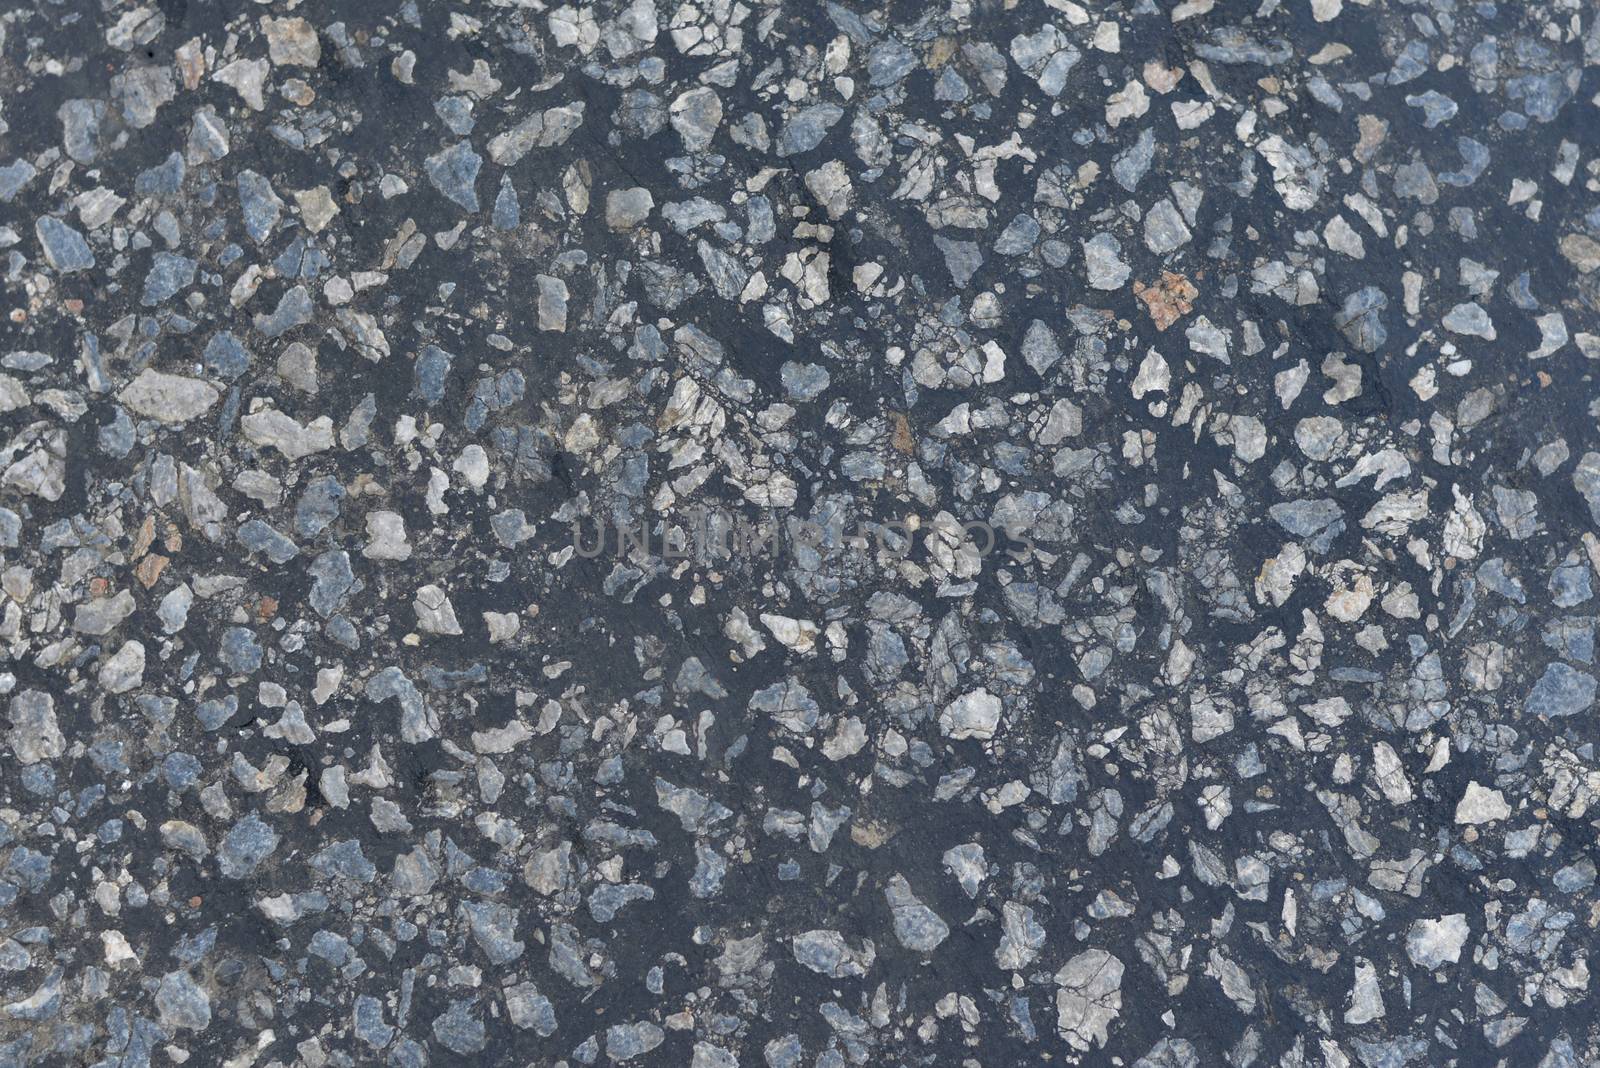 Dark asphalt surface much relief. Close up